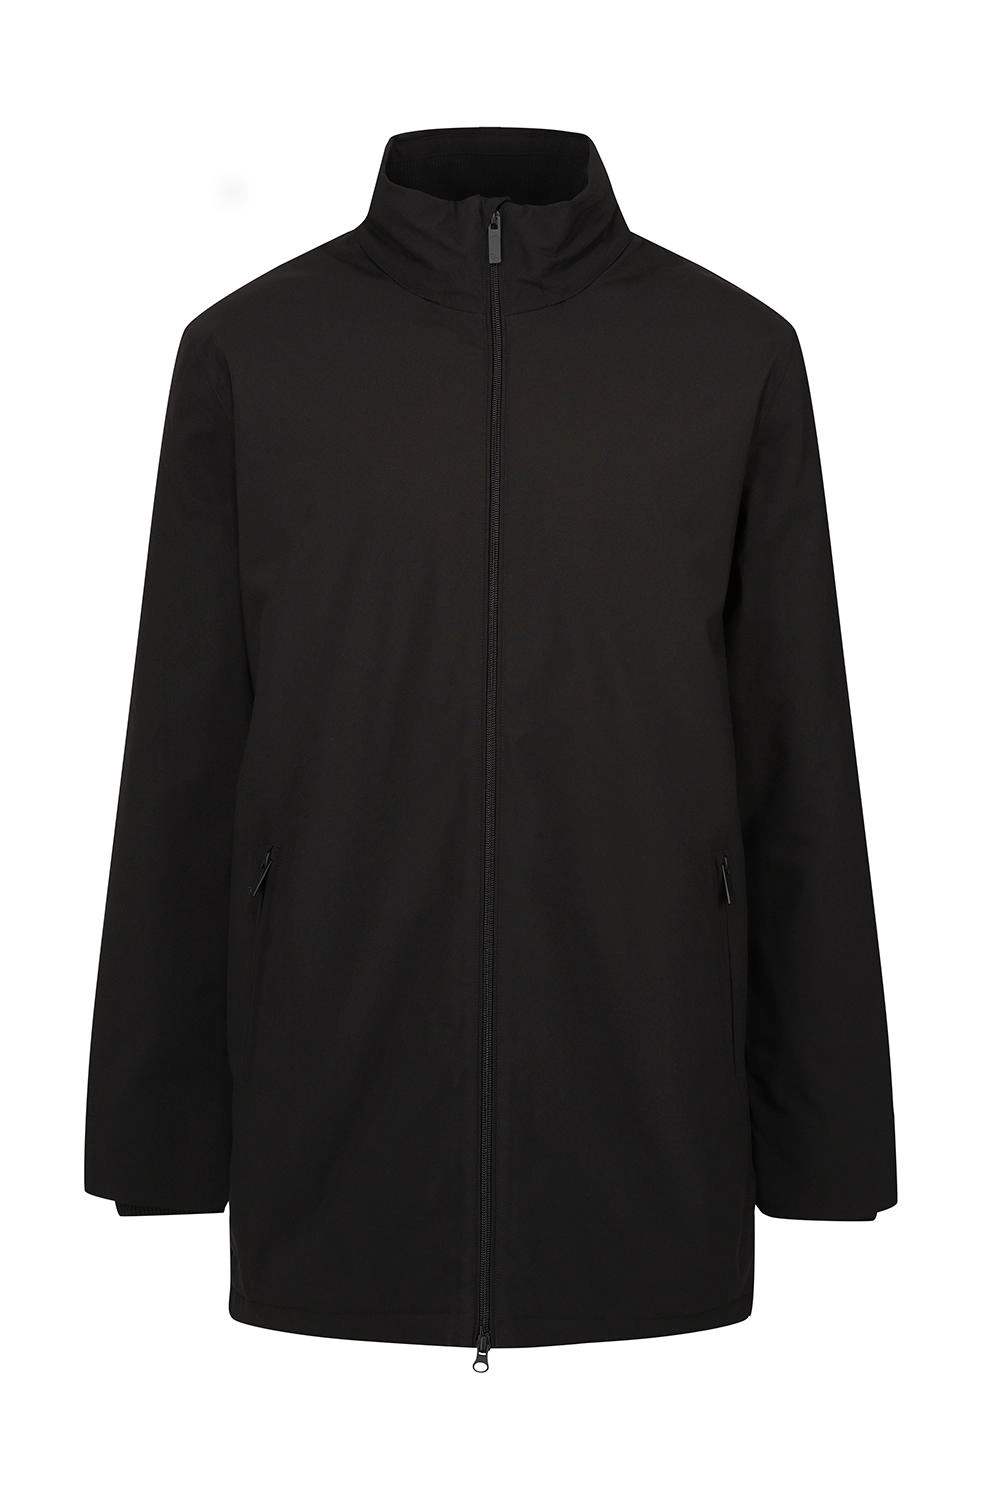 Hampton Executive Jacket zum Besticken und Bedrucken in der Farbe Black mit Ihren Logo, Schriftzug oder Motiv.